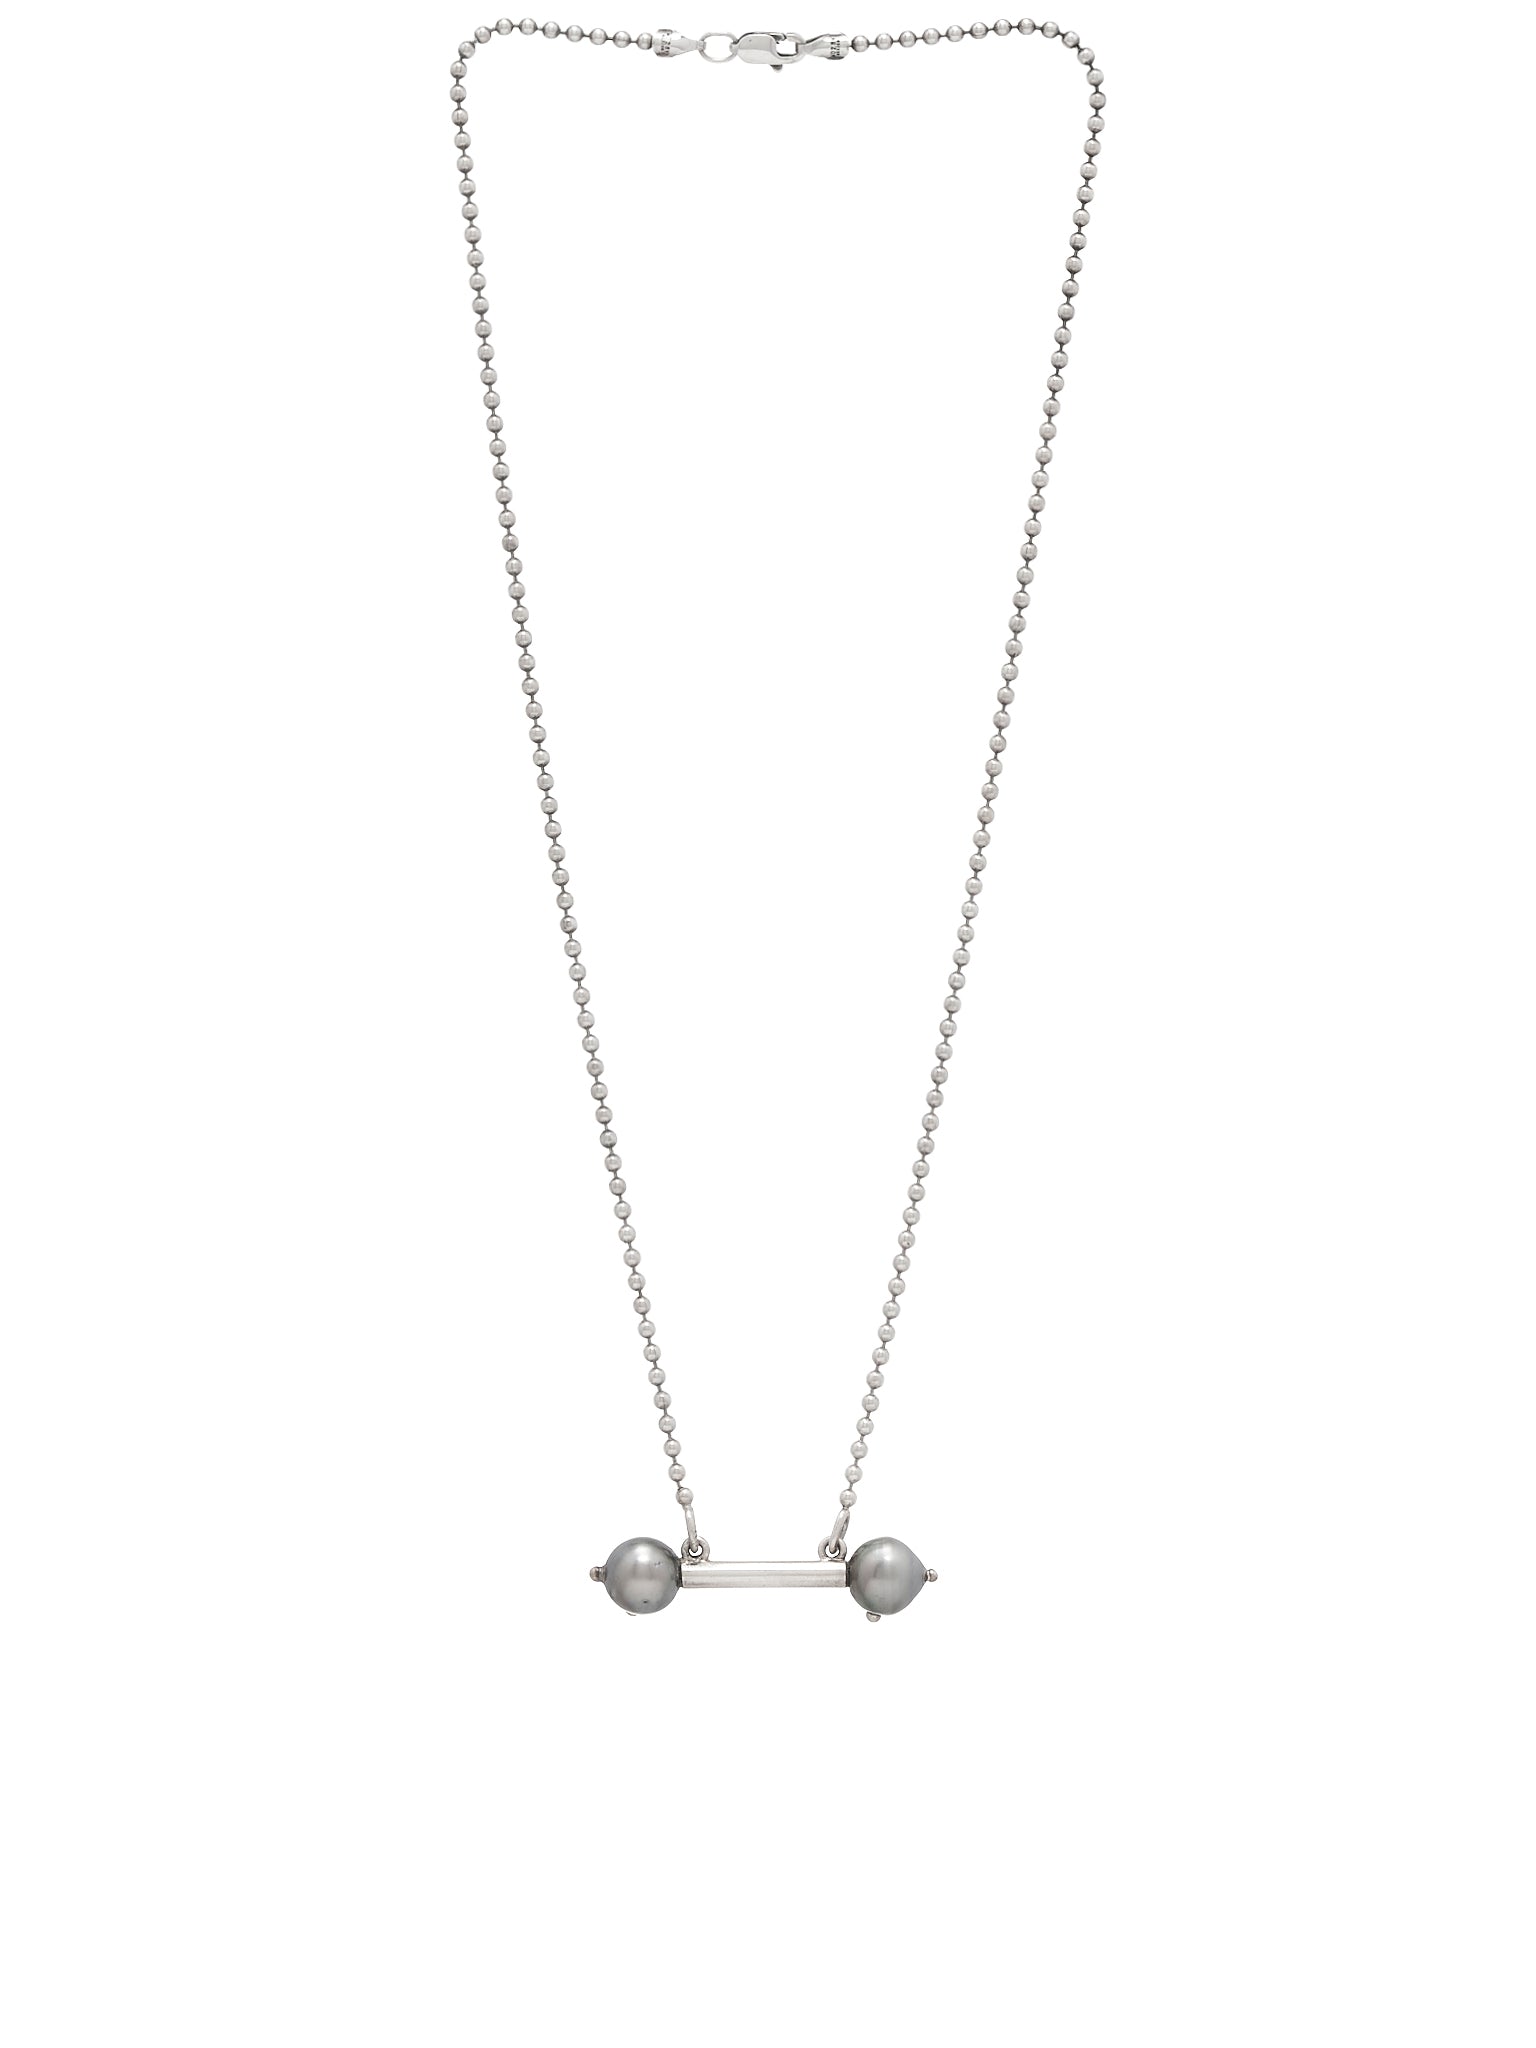 Grey Pearl Percing Necklace (PERLA-PIERCING-GREY-PEARL)